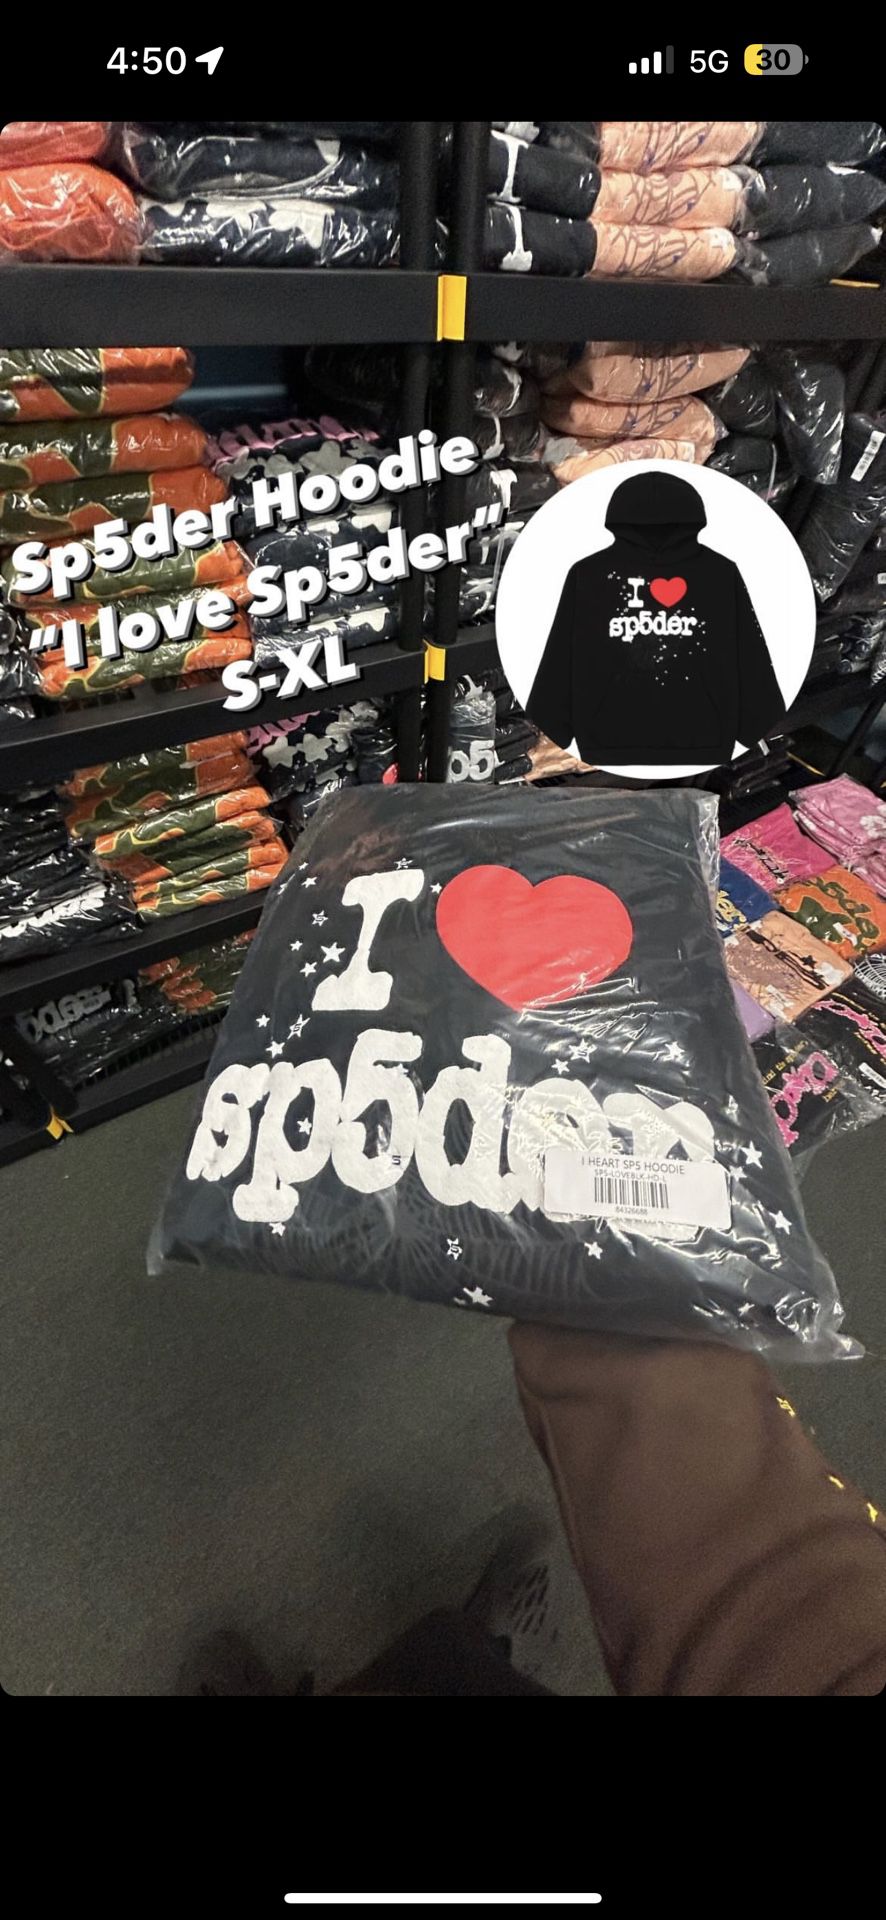 Sp5der “I Love Sp5der”❤️ (Read Desc)